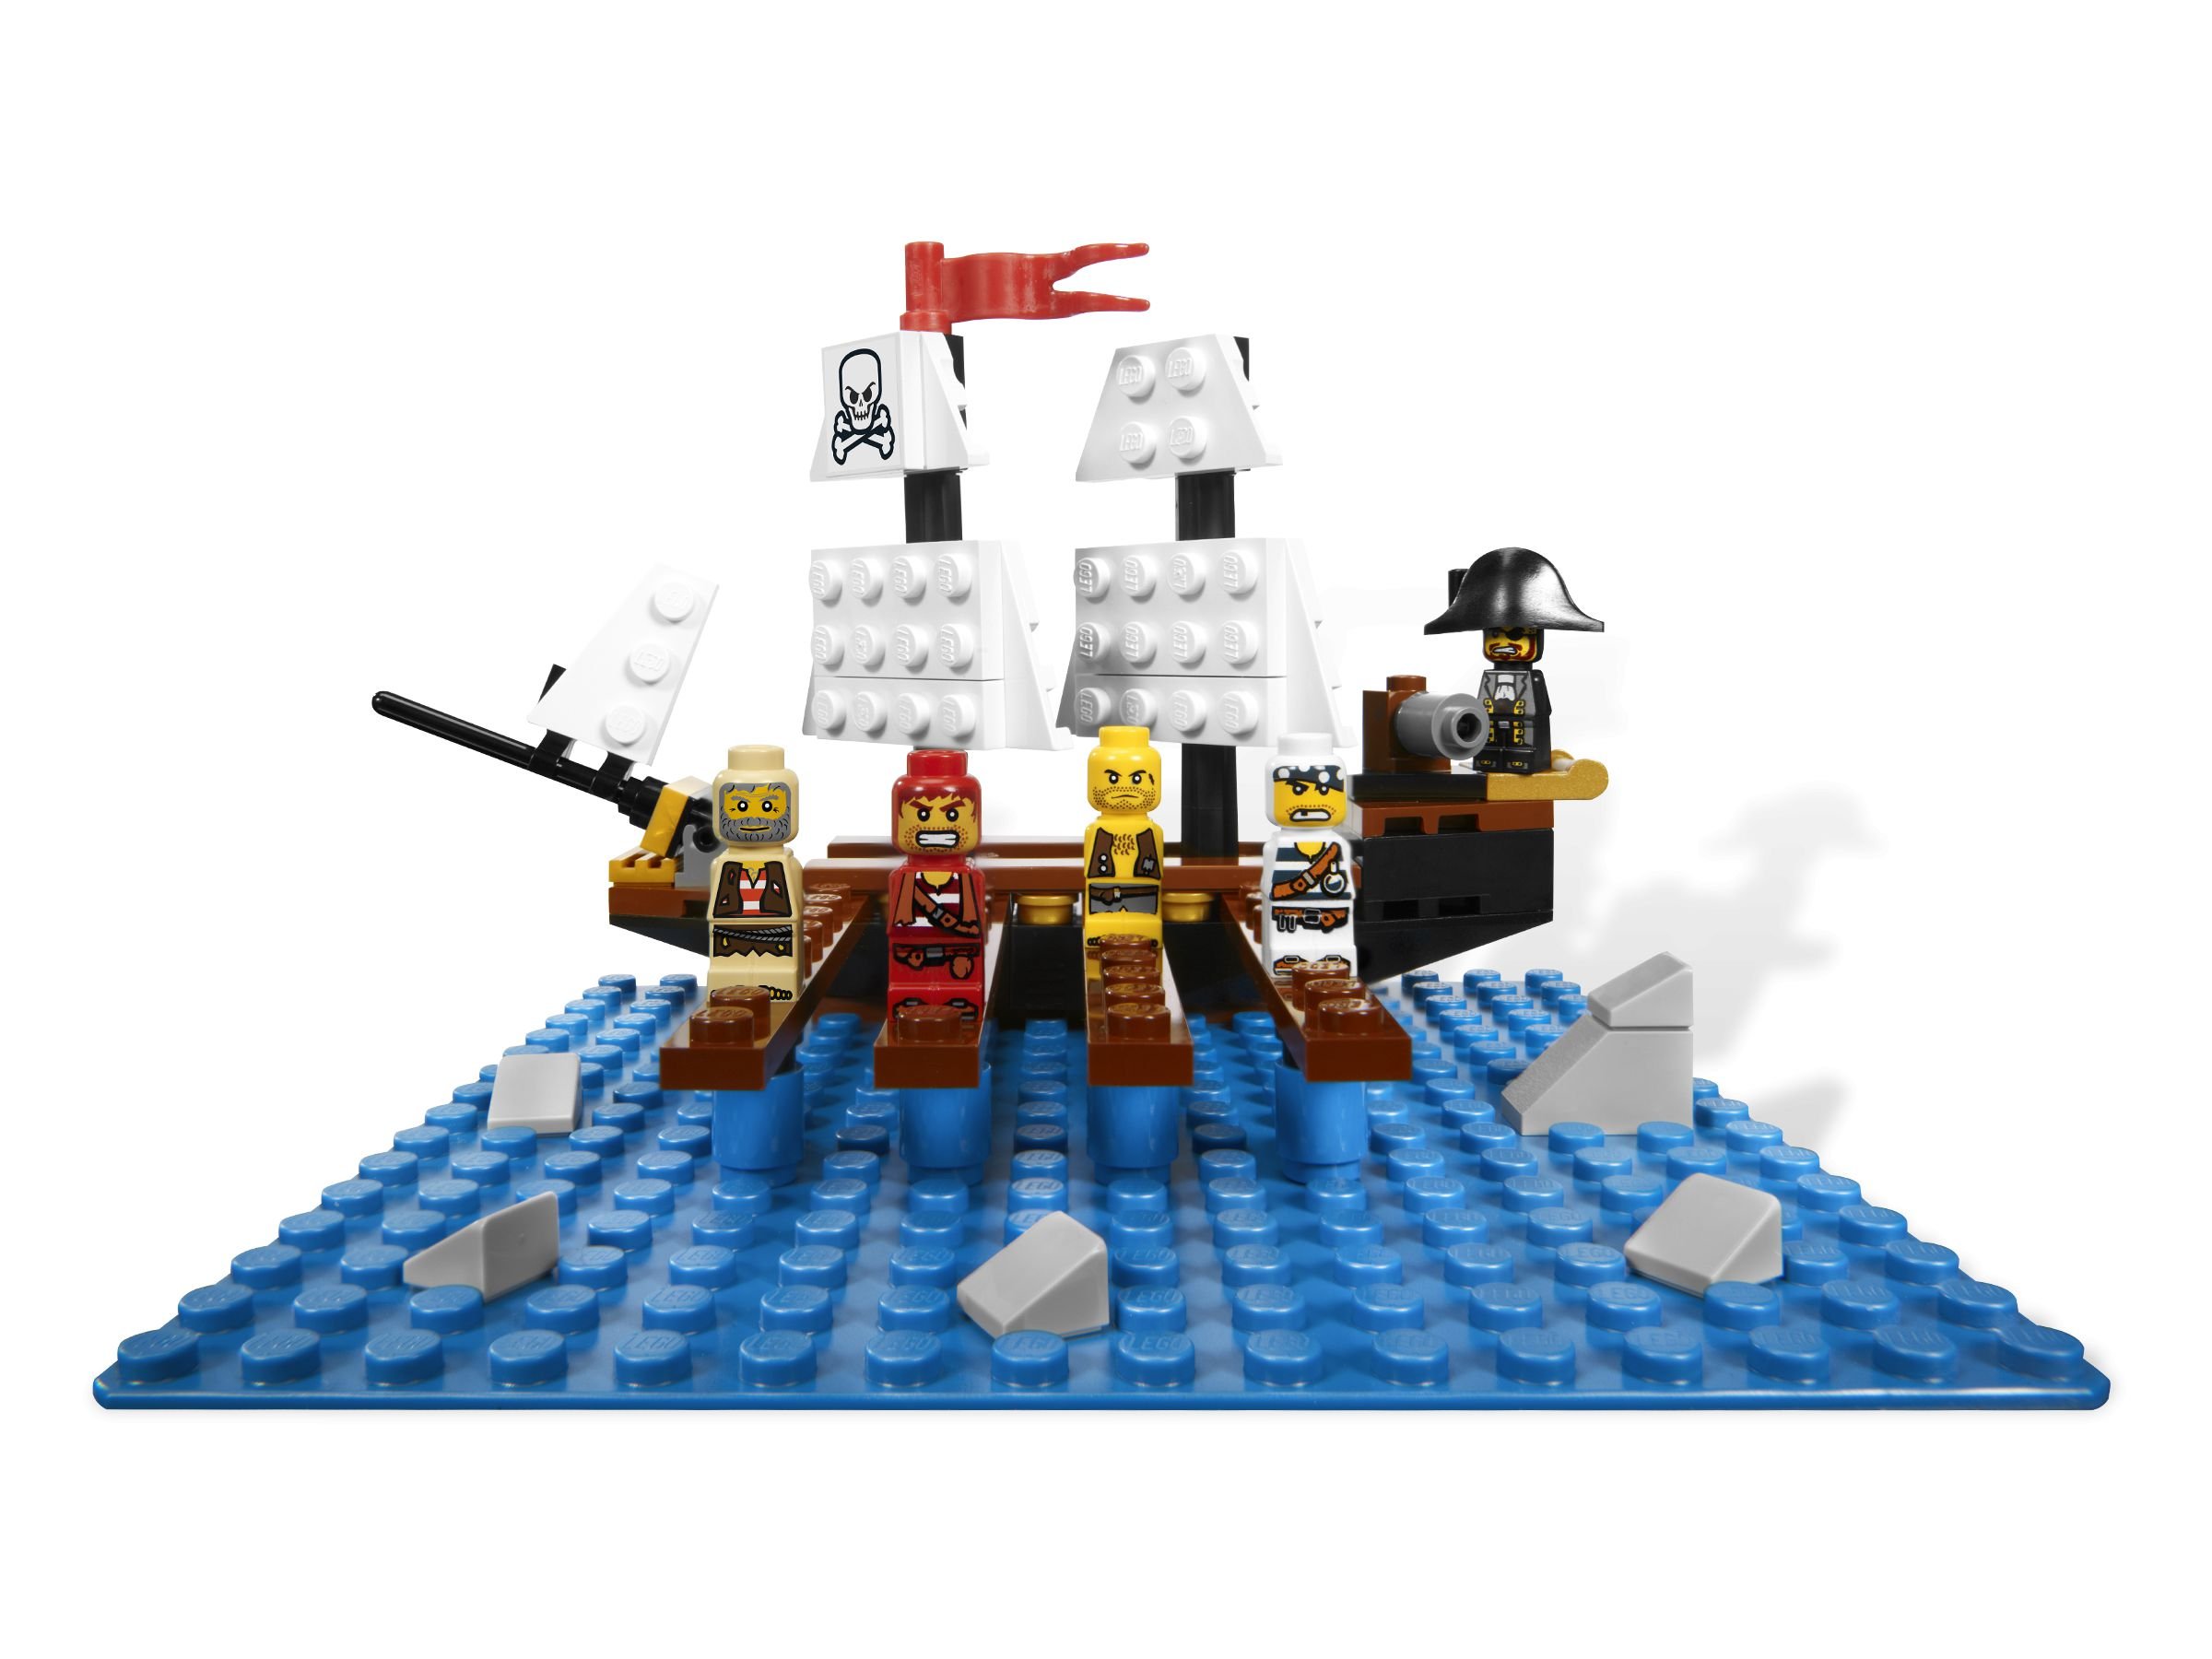 LEGO Games 3848 Pirate Plank LEGO_3848_alt2.jpg